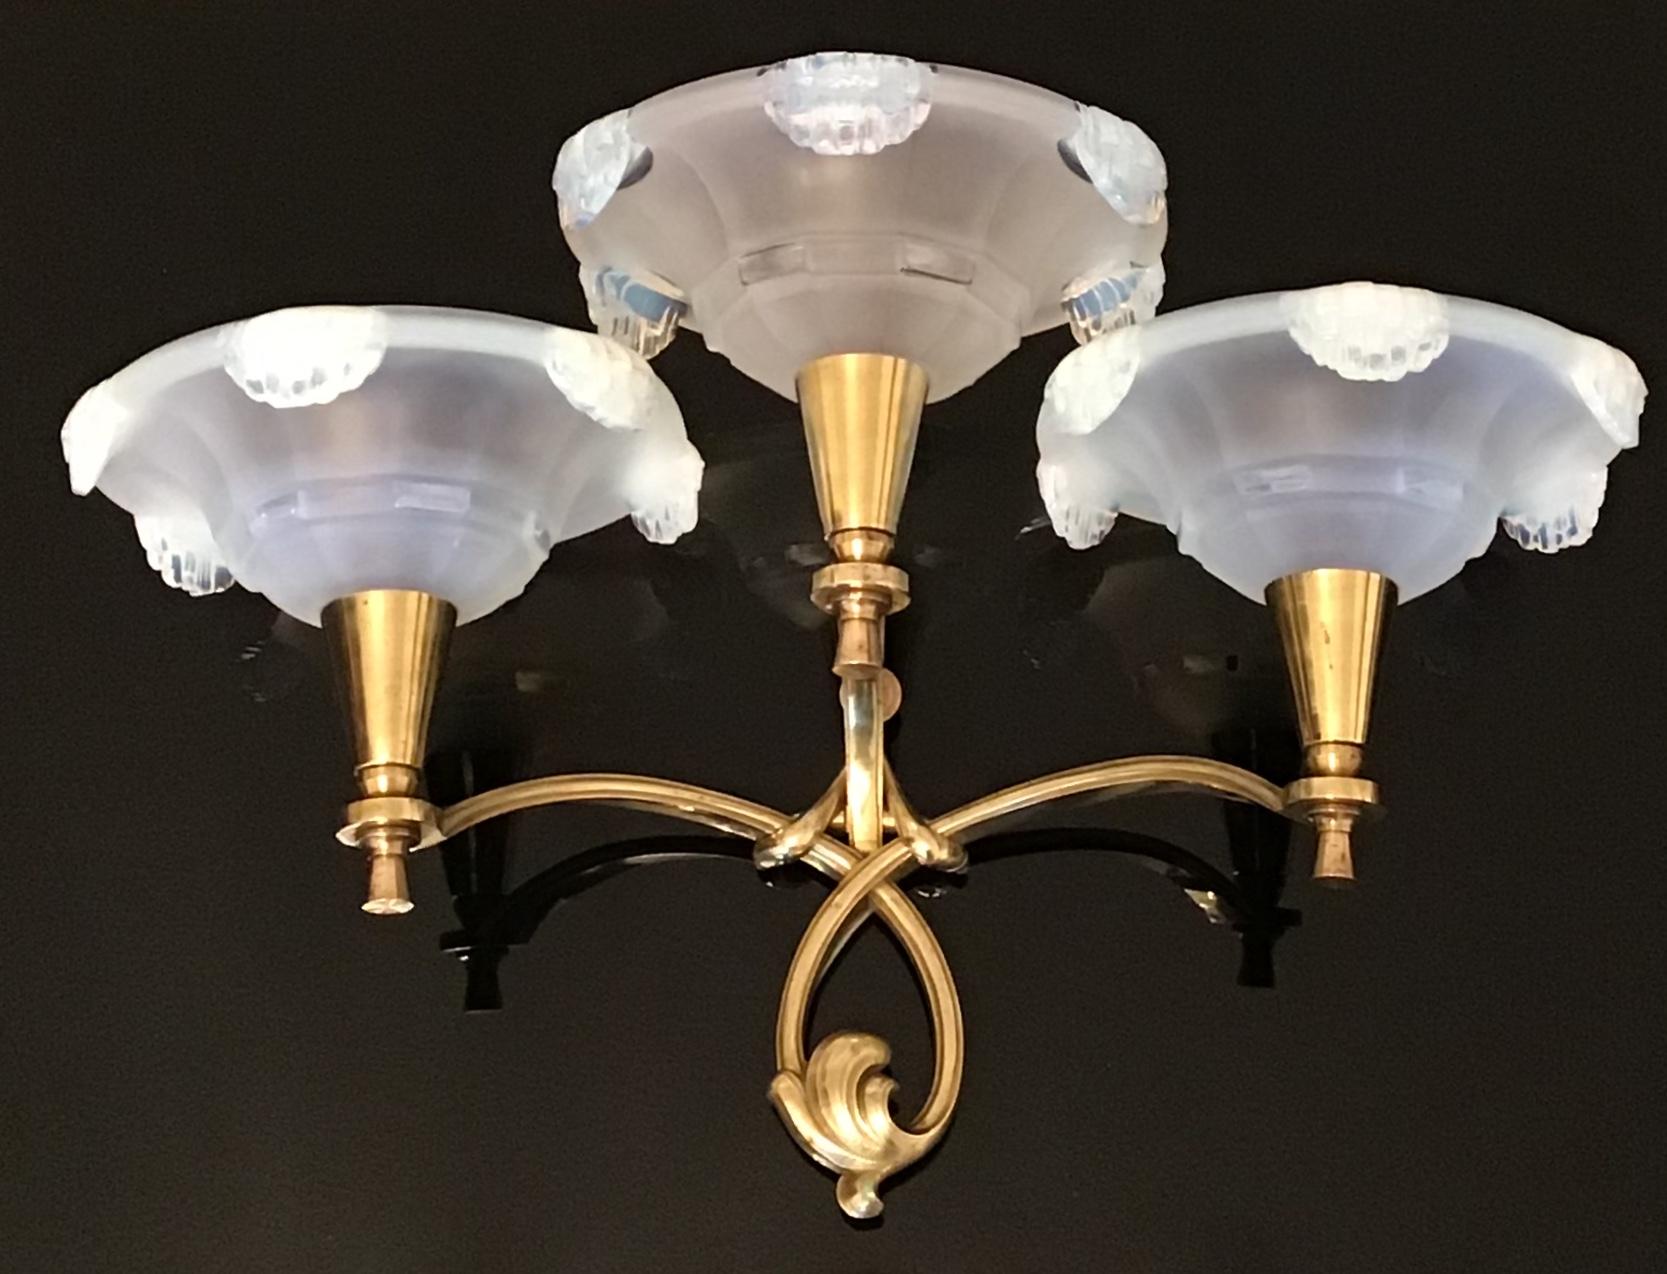 Ein großes Paar französischer Wandleuchter in der Art von Jules Leleu.
Diese Leuchten sind aus massiver, geprägter Bronze mit sechs opalisierenden Glasschirmen für jede Leuchte gefertigt  3 x B22 (französisch bajonnett) Glühbirnen.
Neu verkabelt.